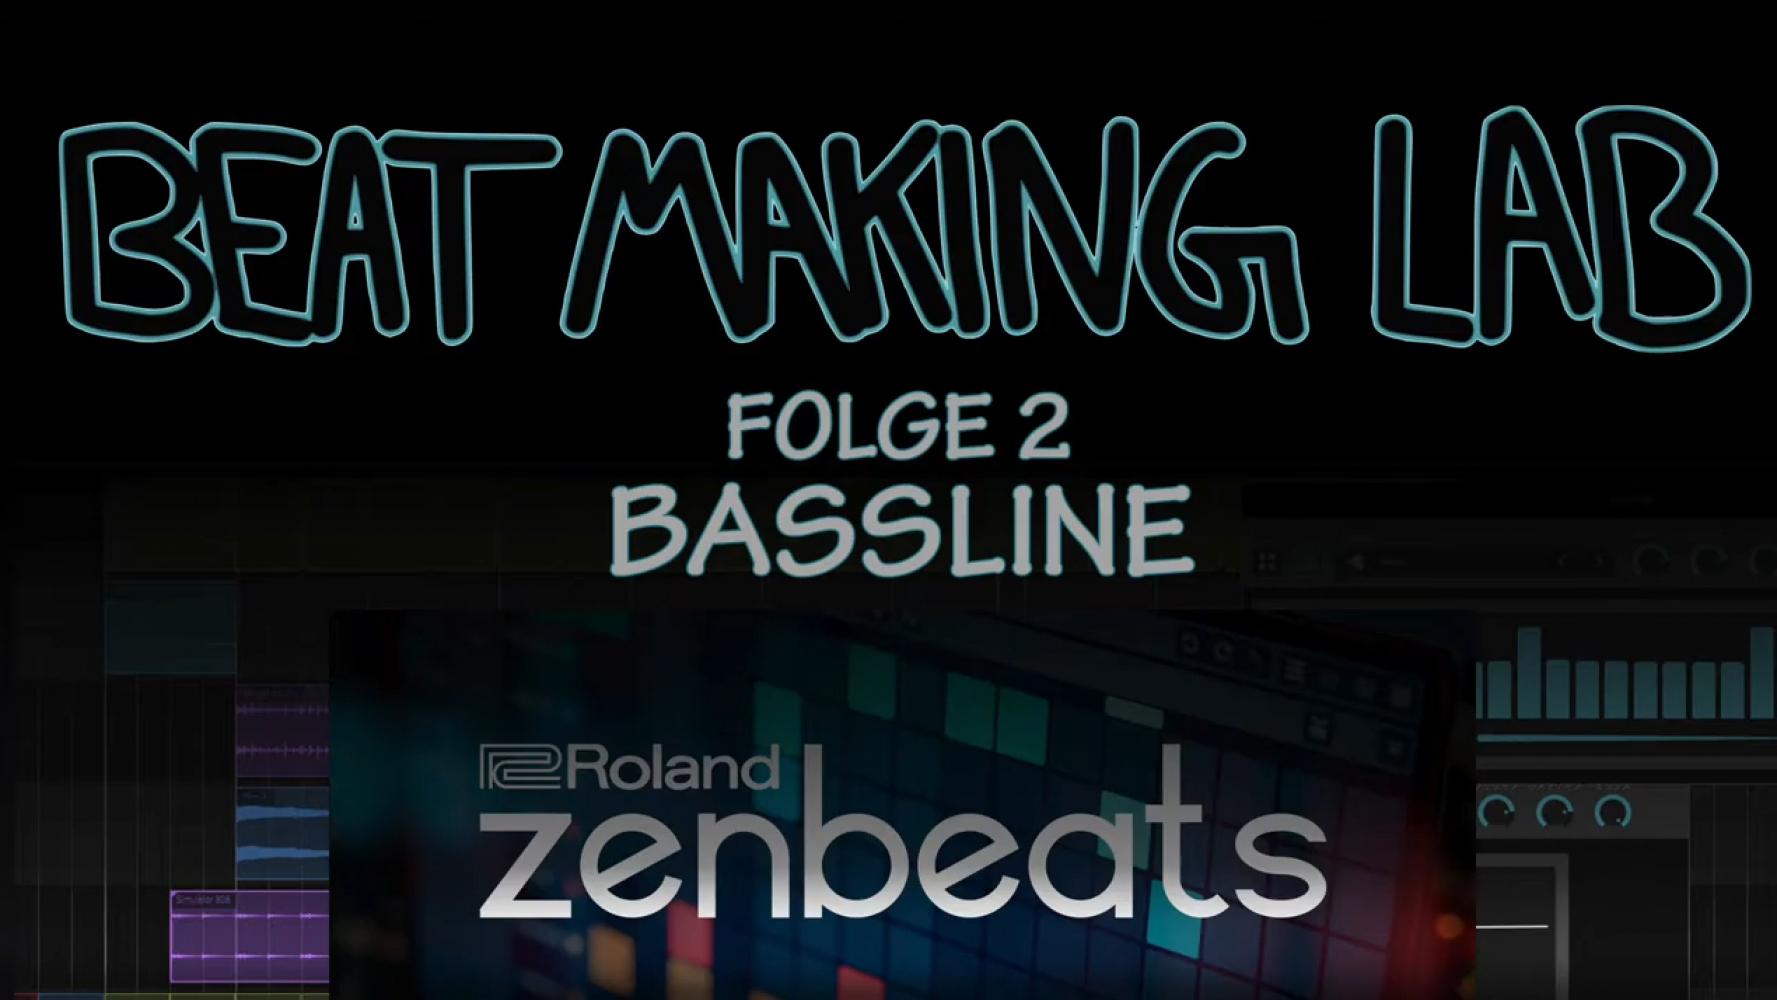 Bild zur Veranstaltung - edYo!cation 2020 - Beat Making Lab, Bassline